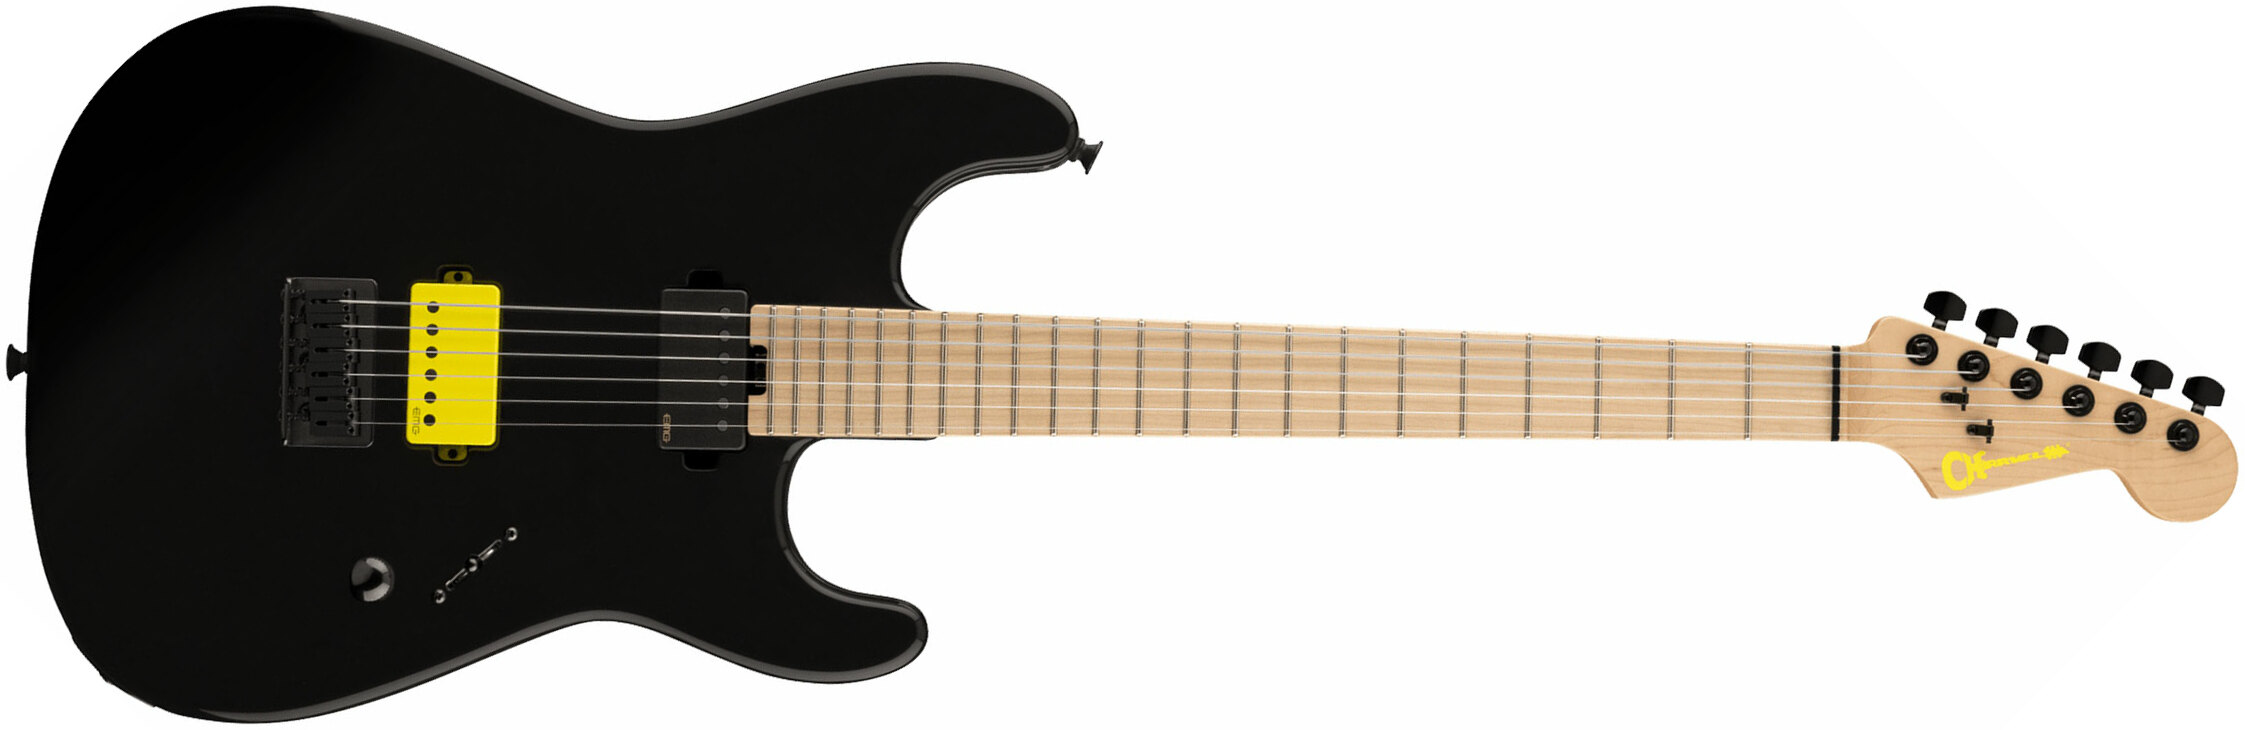 Charvel Sean Long San Dimas Style 1 Pro-mod Signature 2h Emg Ht Mn - Gloss Black - Guitarra eléctrica con forma de str. - Main picture